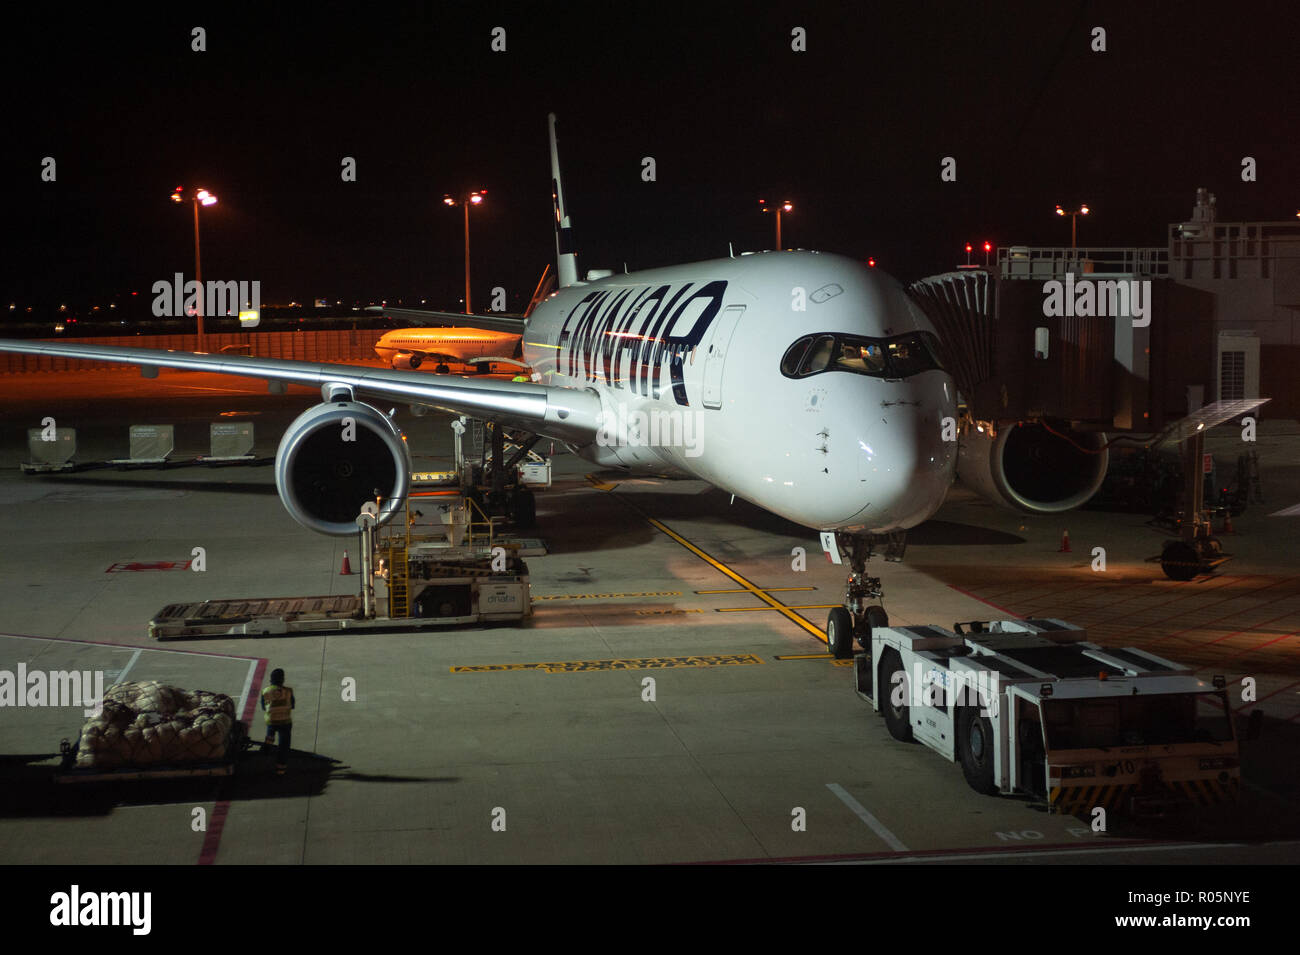 03.06.2018 - Singapur, República de Singapur, Asia - un Airbus A350 de Finnair pasajero avión está estacionado en una puerta en el aeropuerto de Changi de Singapur. Foto de stock